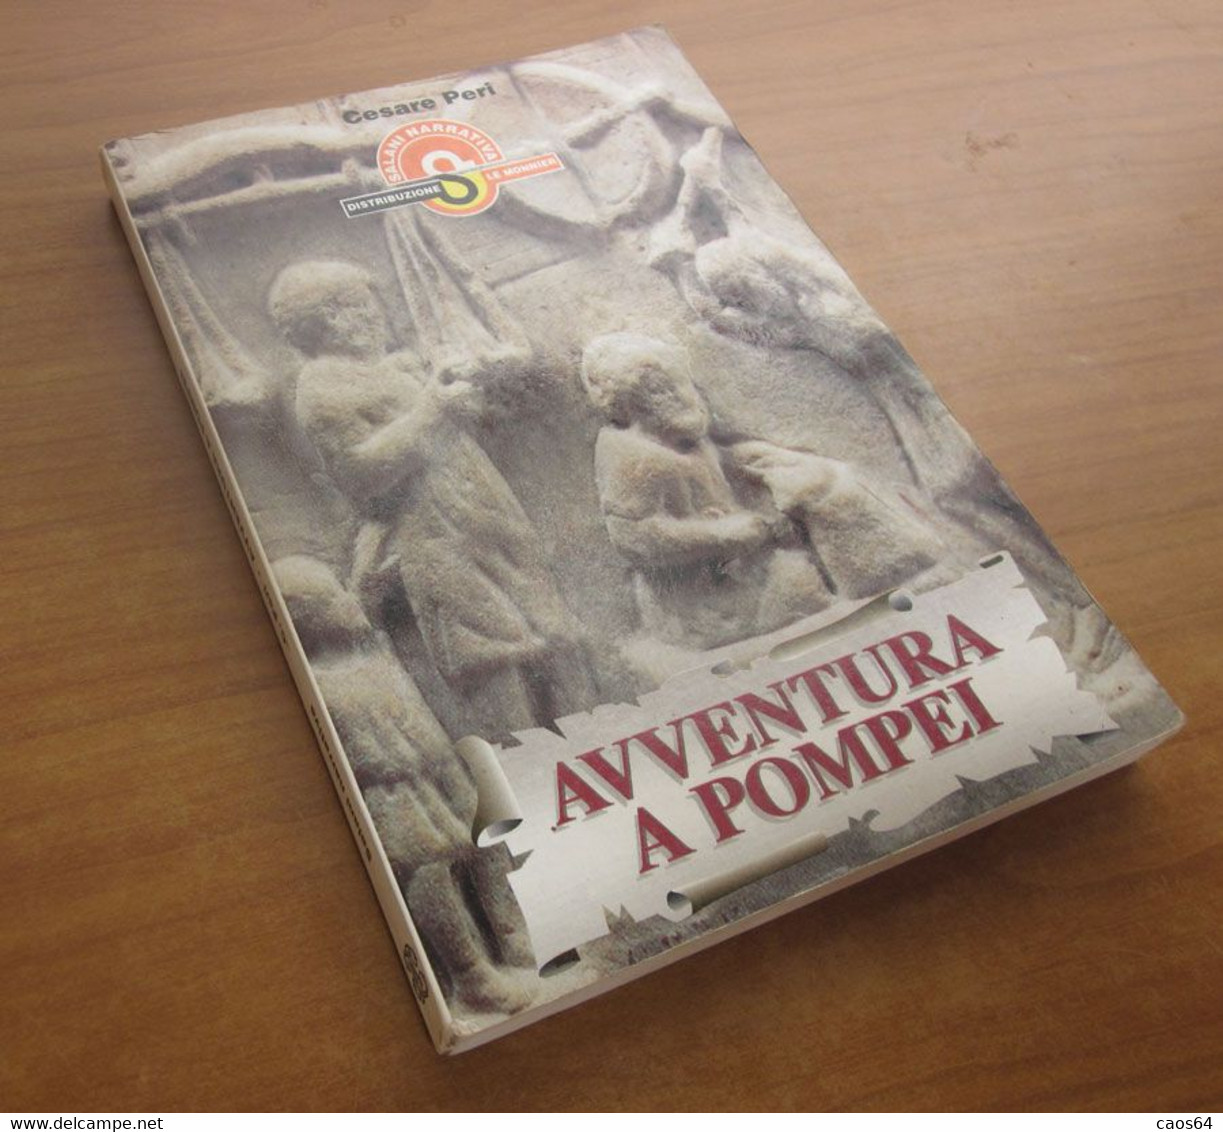 Avventura A Pompei	  Cesare Peri  1996  Salani - Adolescents